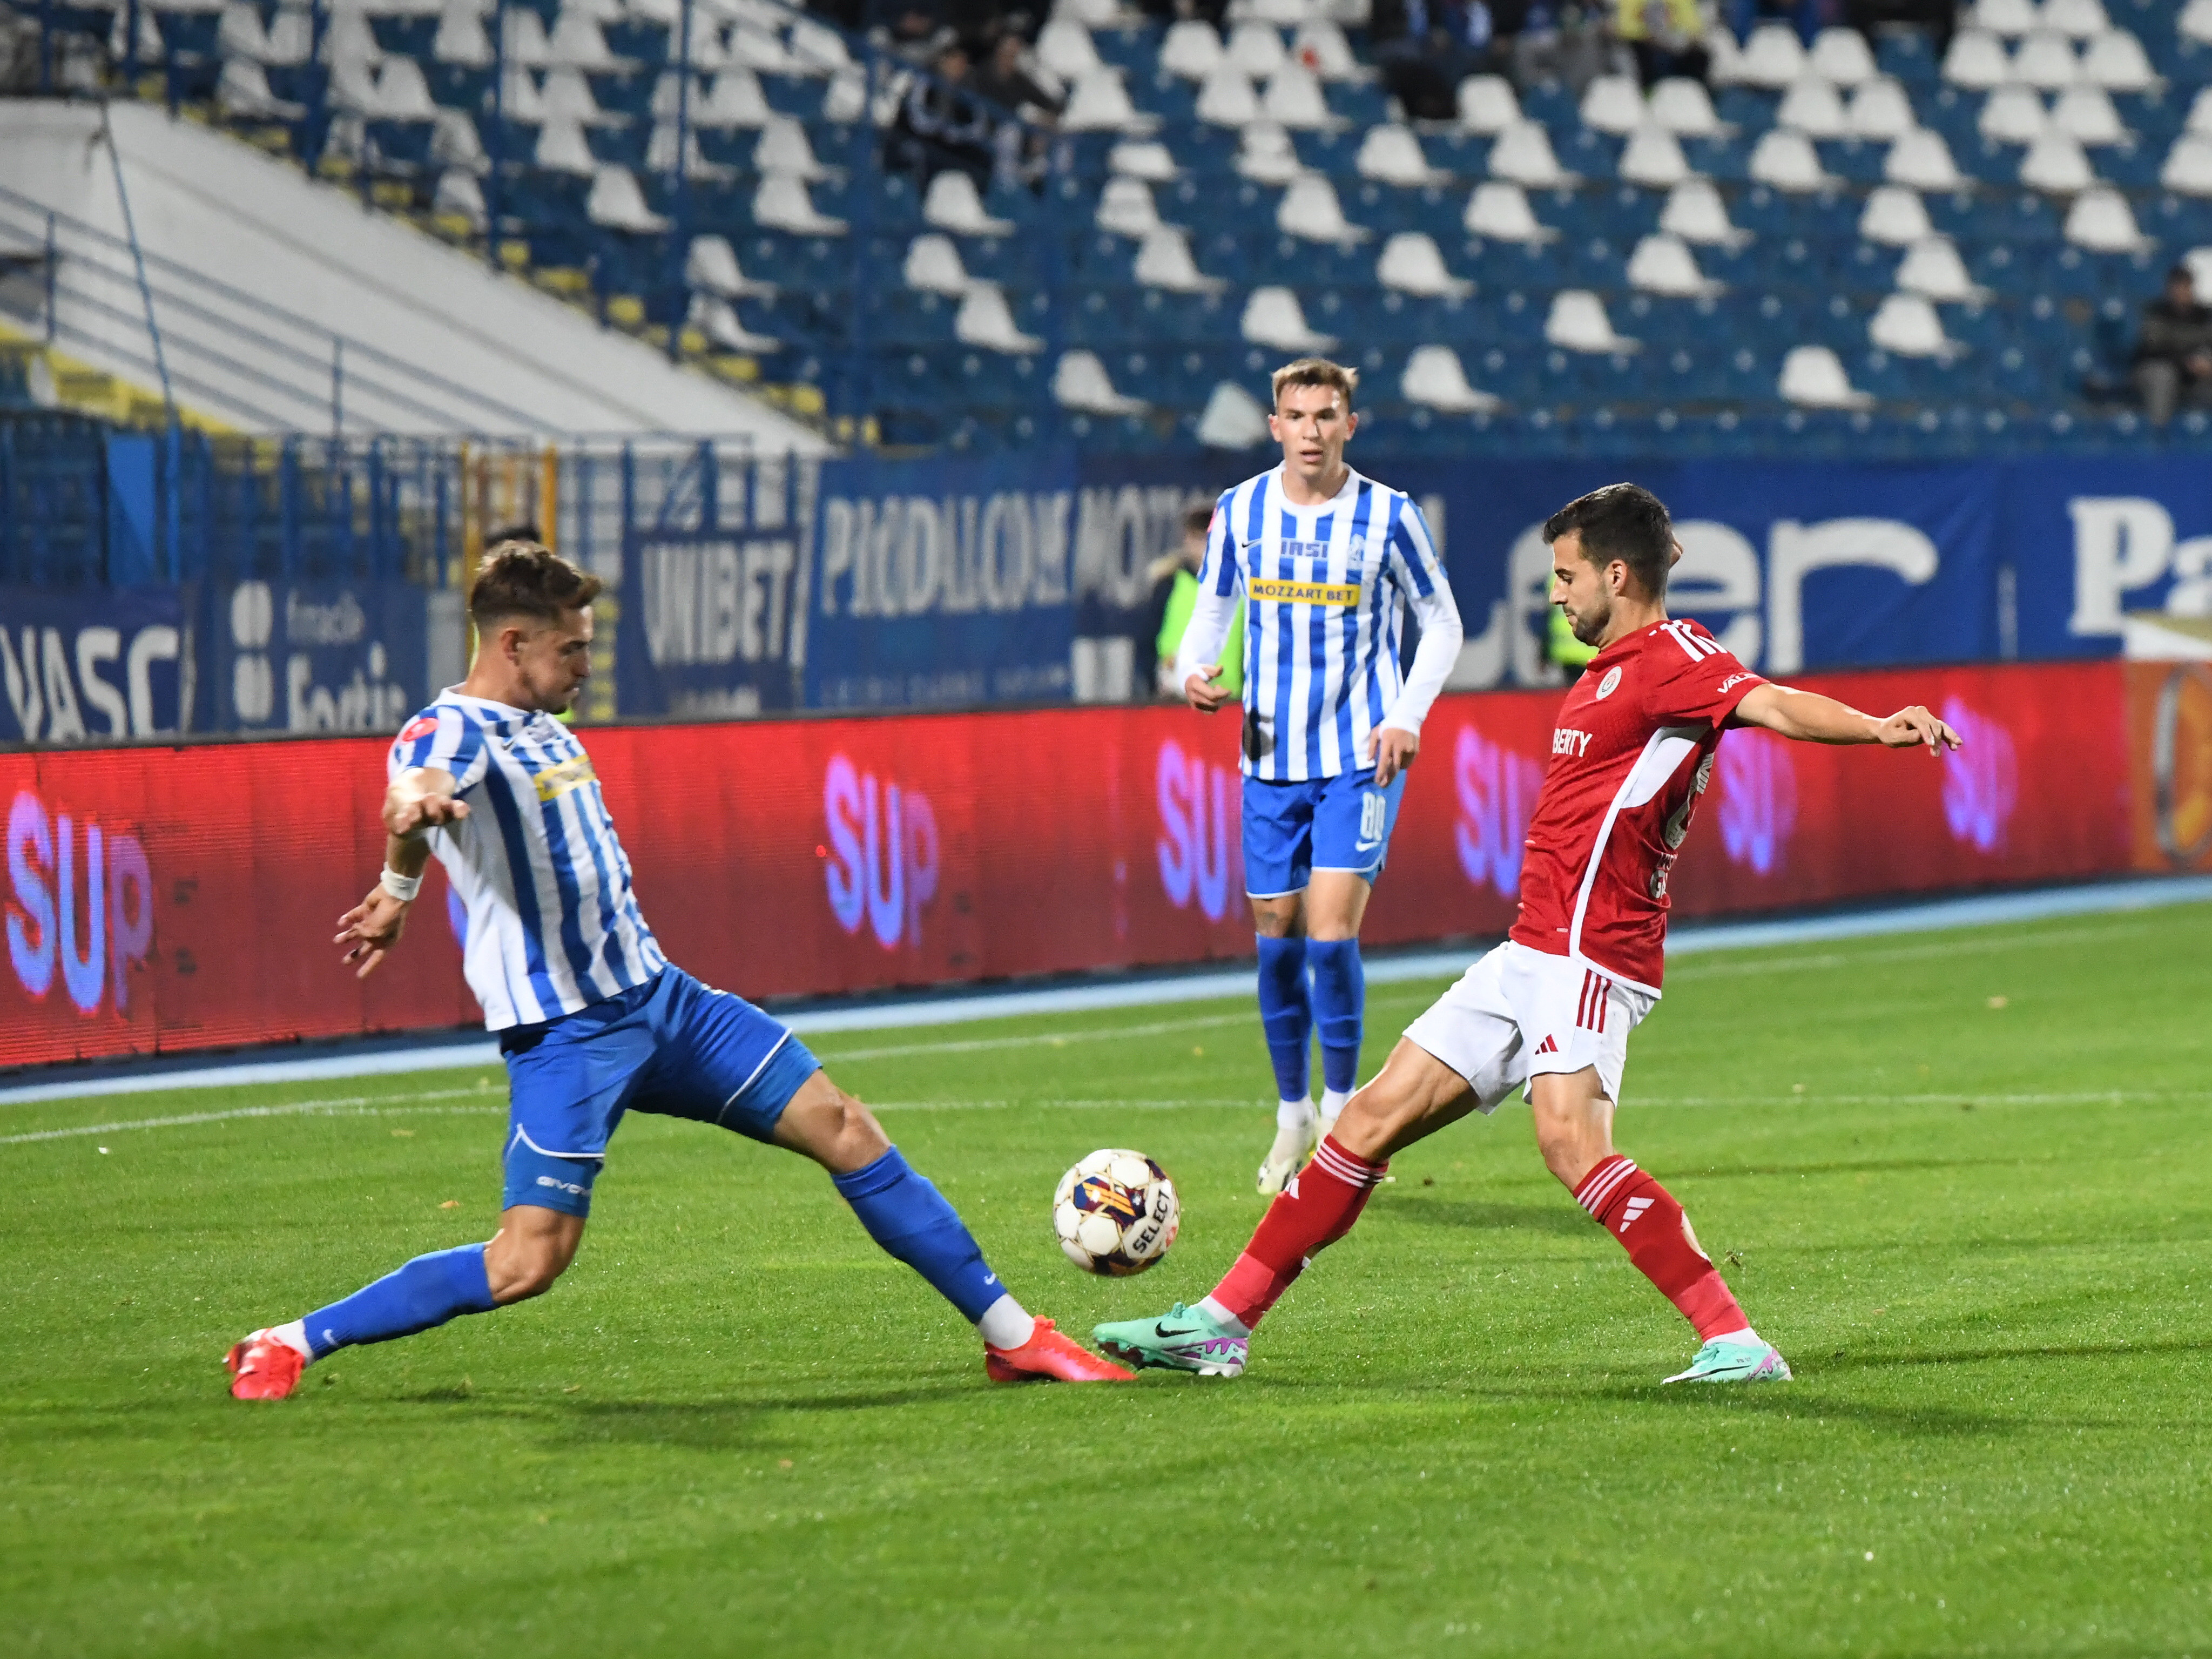 Oțelul - Poli Iași 0-0, ACUM, Digi Sport 1. Derby de Moldova în play-out